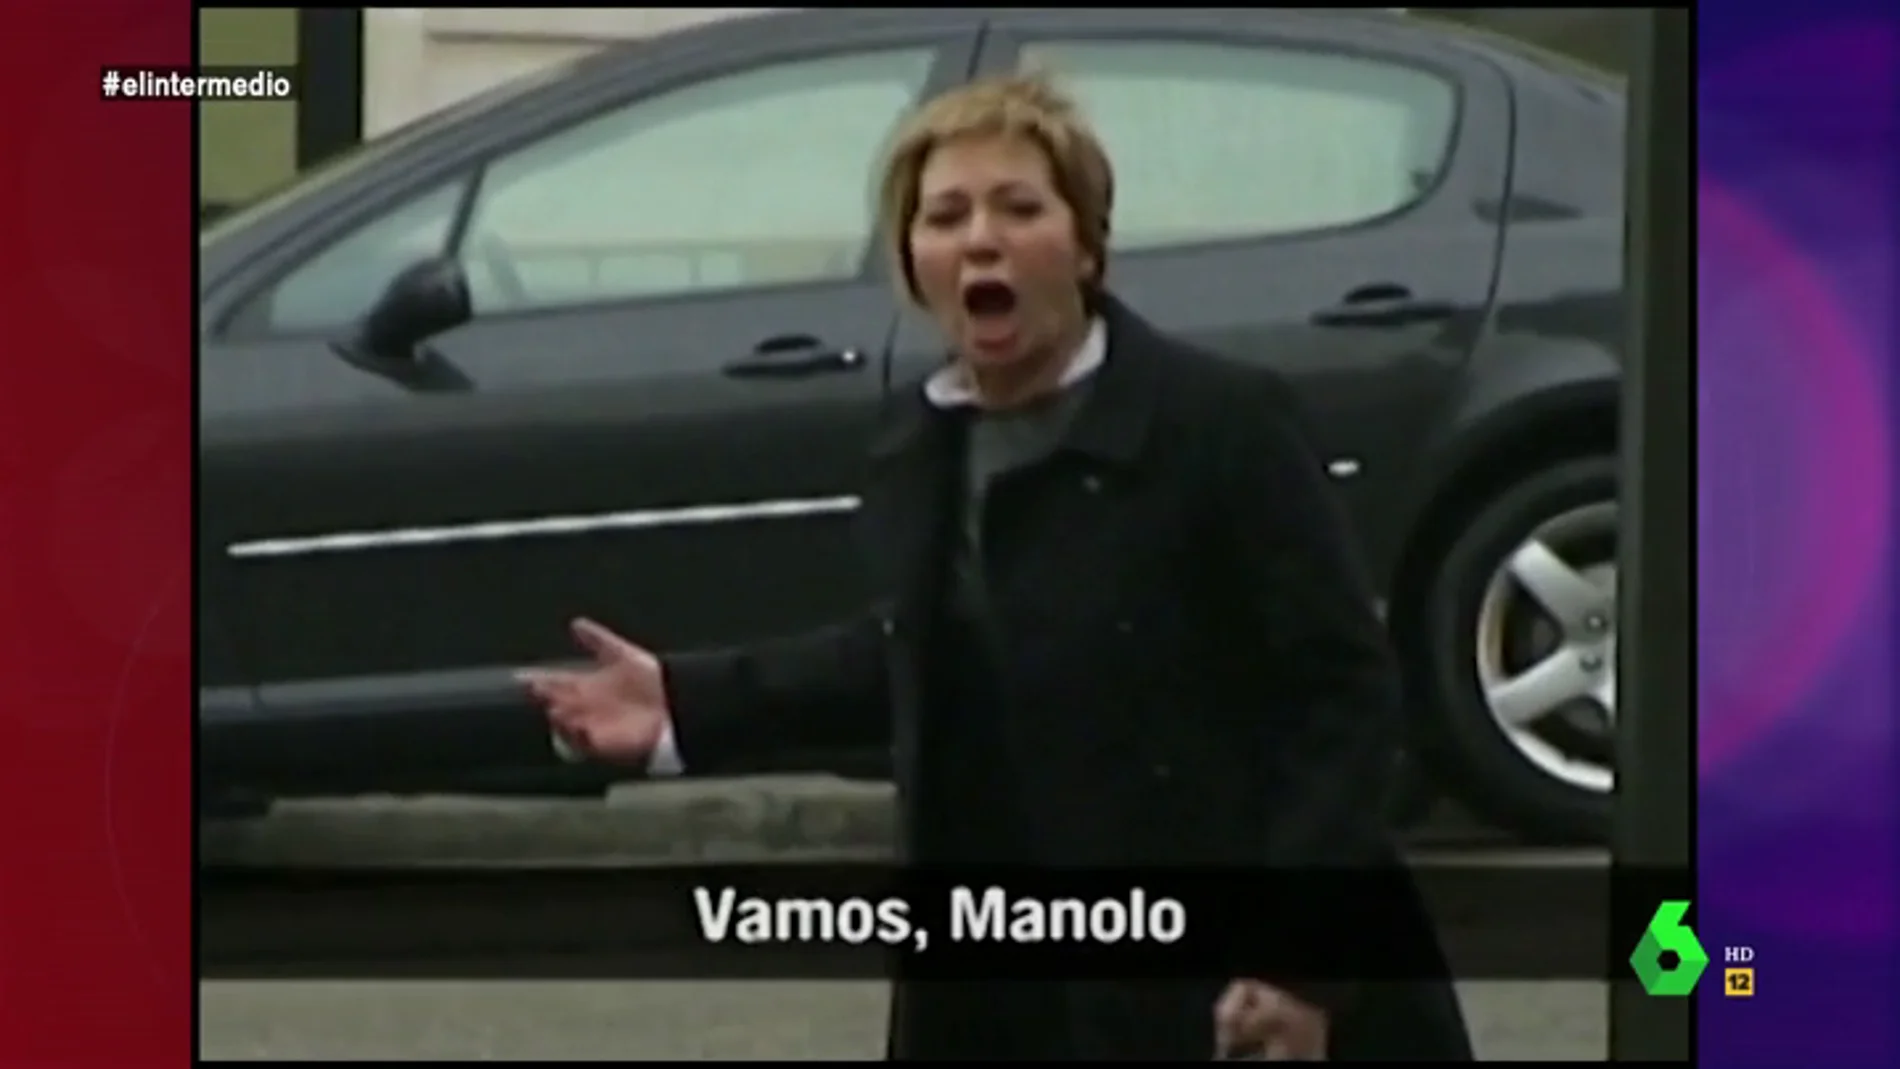 El día que una enfadada Celia Villalobos hizo famoso a su chófer a pleno grito: "¡Vamos joder, Manolo!"